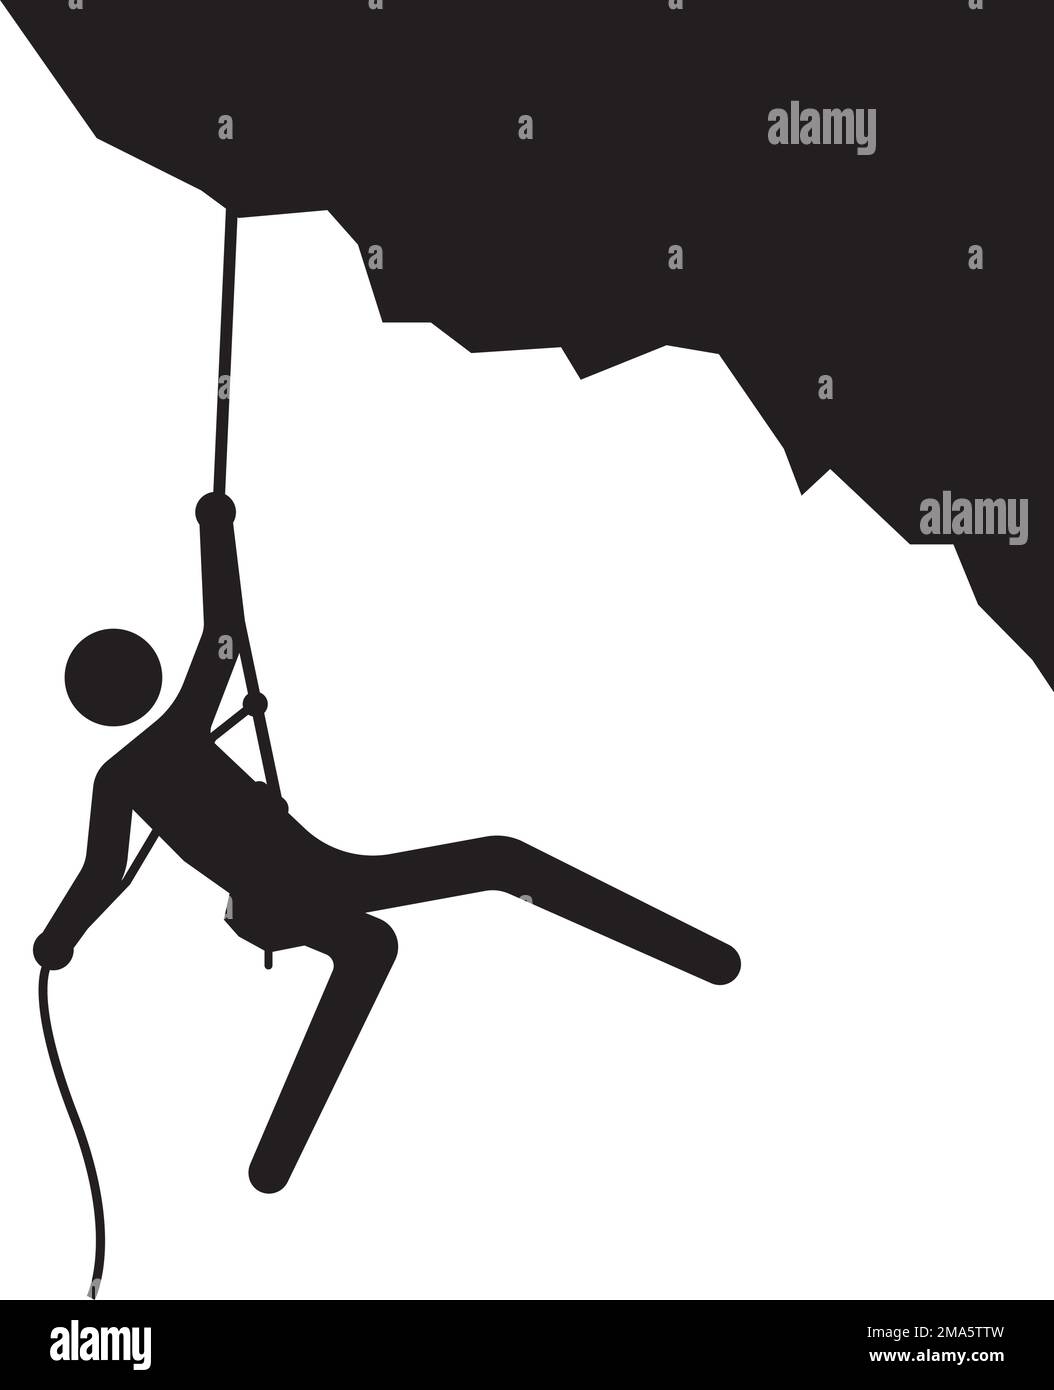 rock climbing icon vector illustration logo template Stock Vector